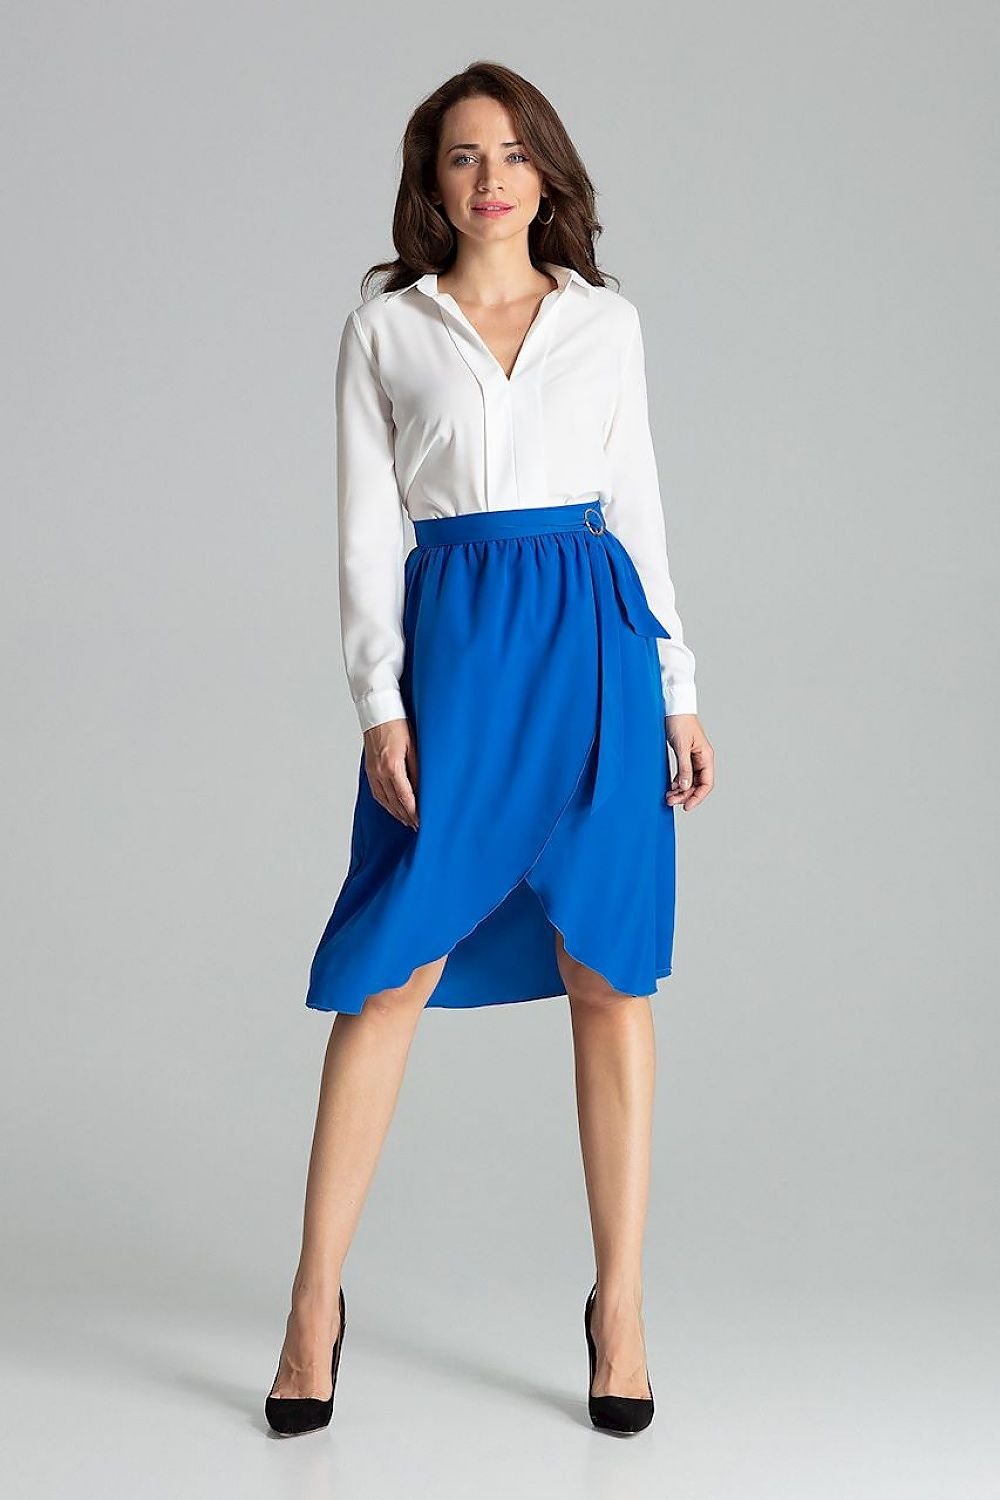 Jupe bleue mi-longue portefeuille avec taille plissée et ceinture élégante pour tenue chic.